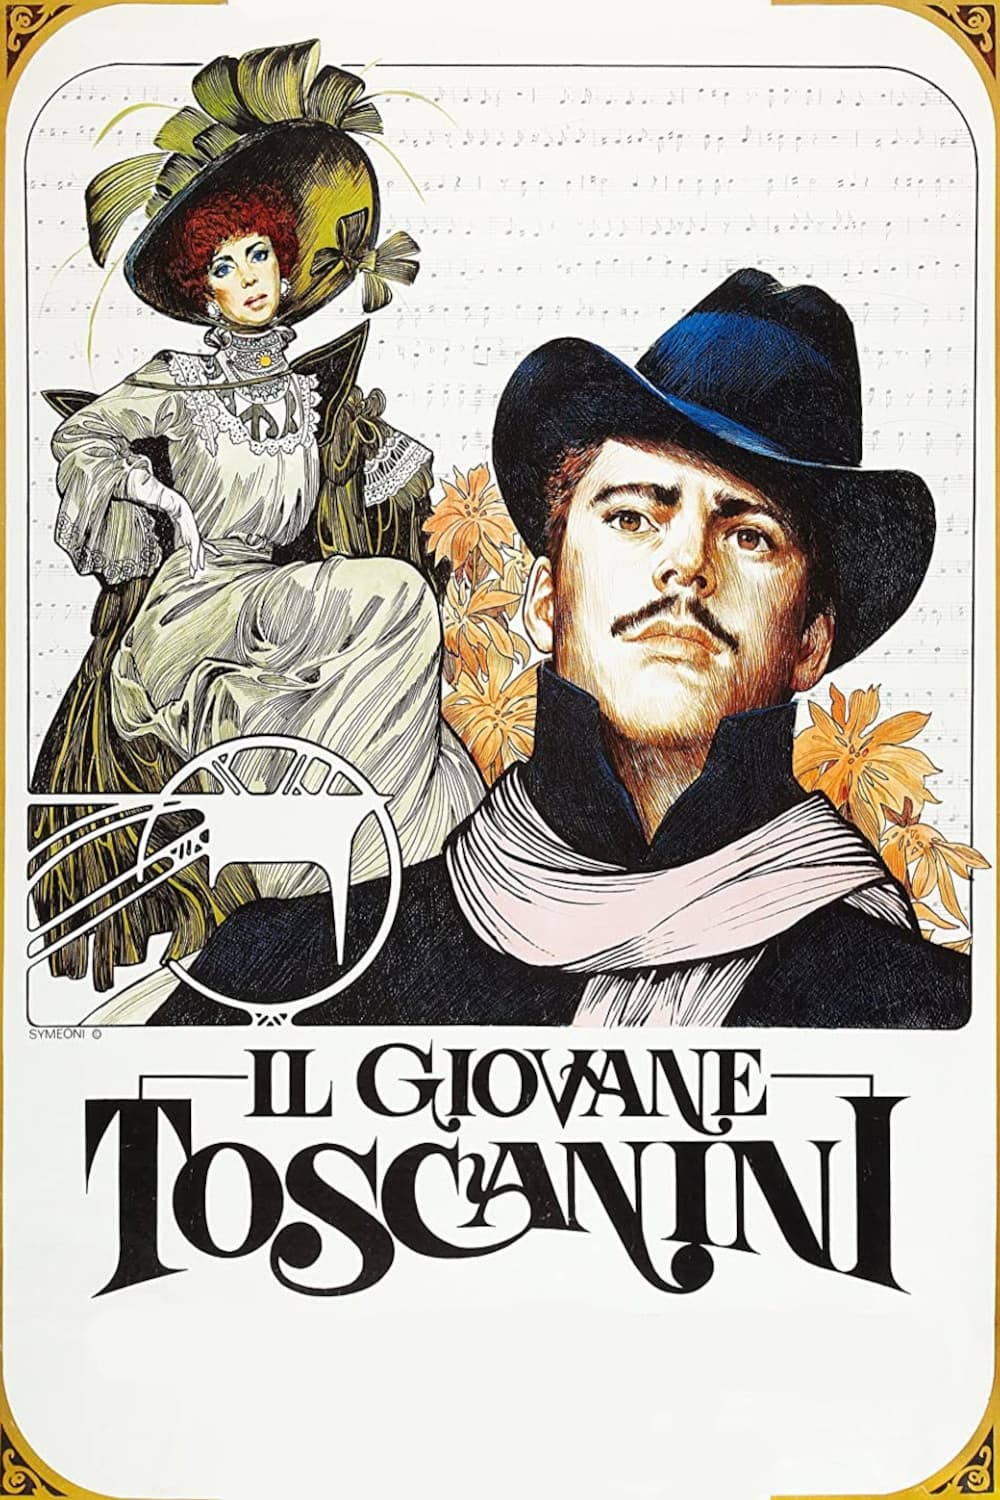 Der junge Toscanini